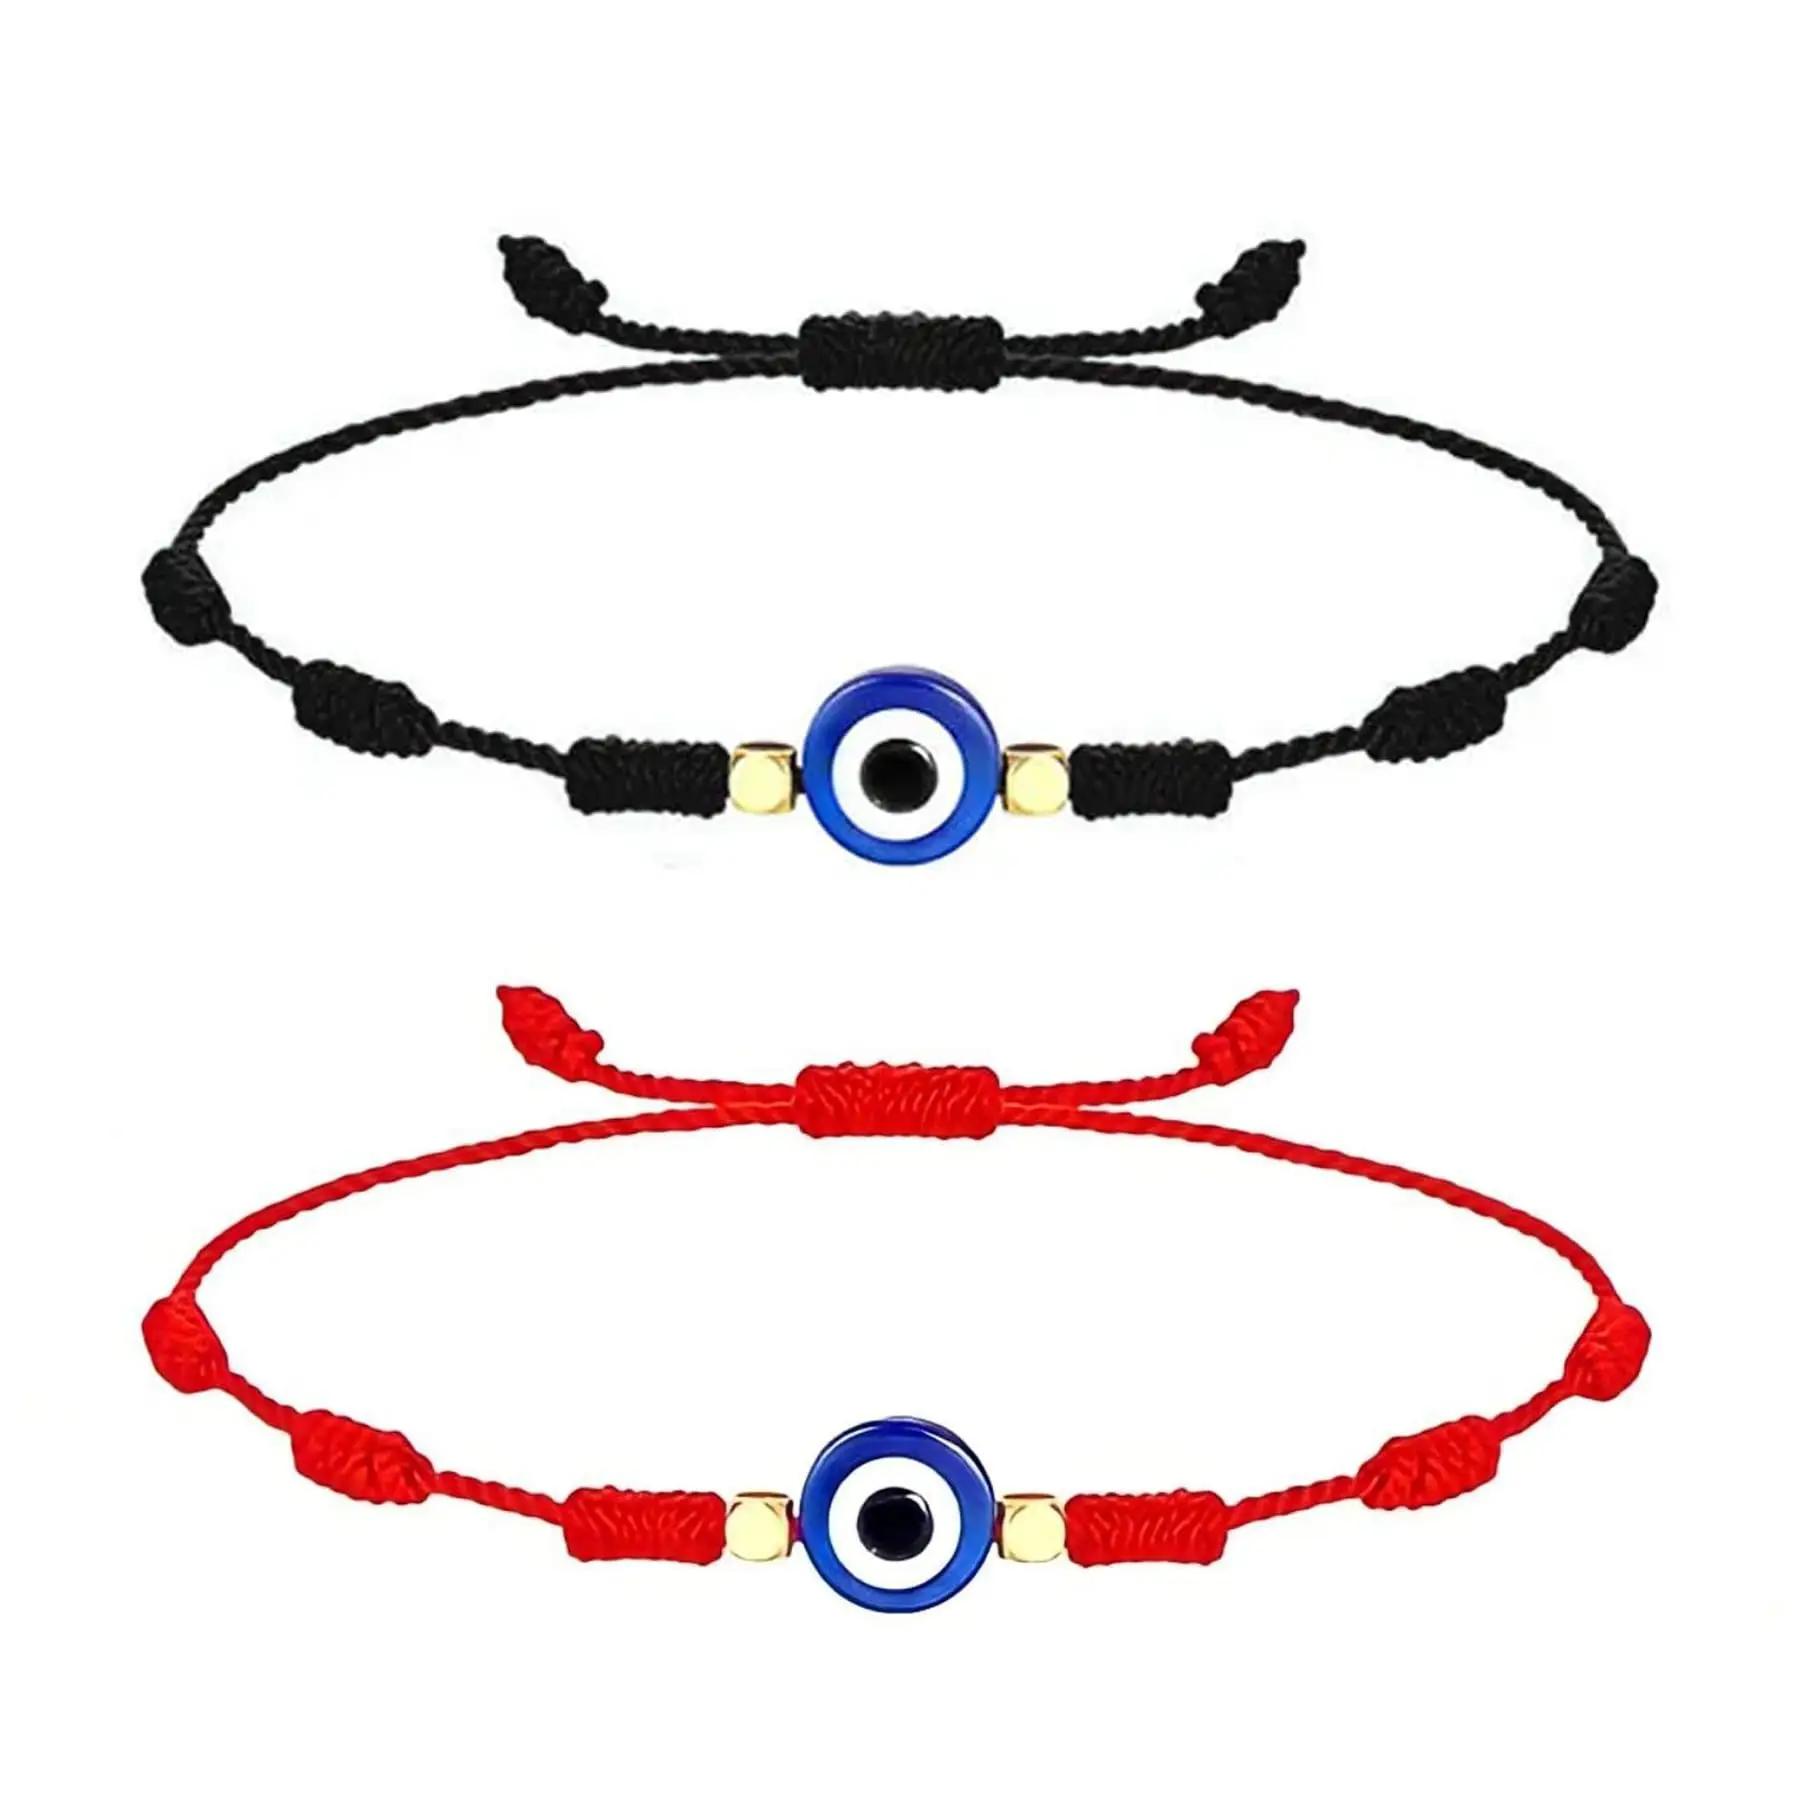 

Turkish Evil Eye Bracelets,7 Knot Lucky Blue Greek Eye Thread Bracelet, Handmade Black Red String Bracelet for Women Men Family